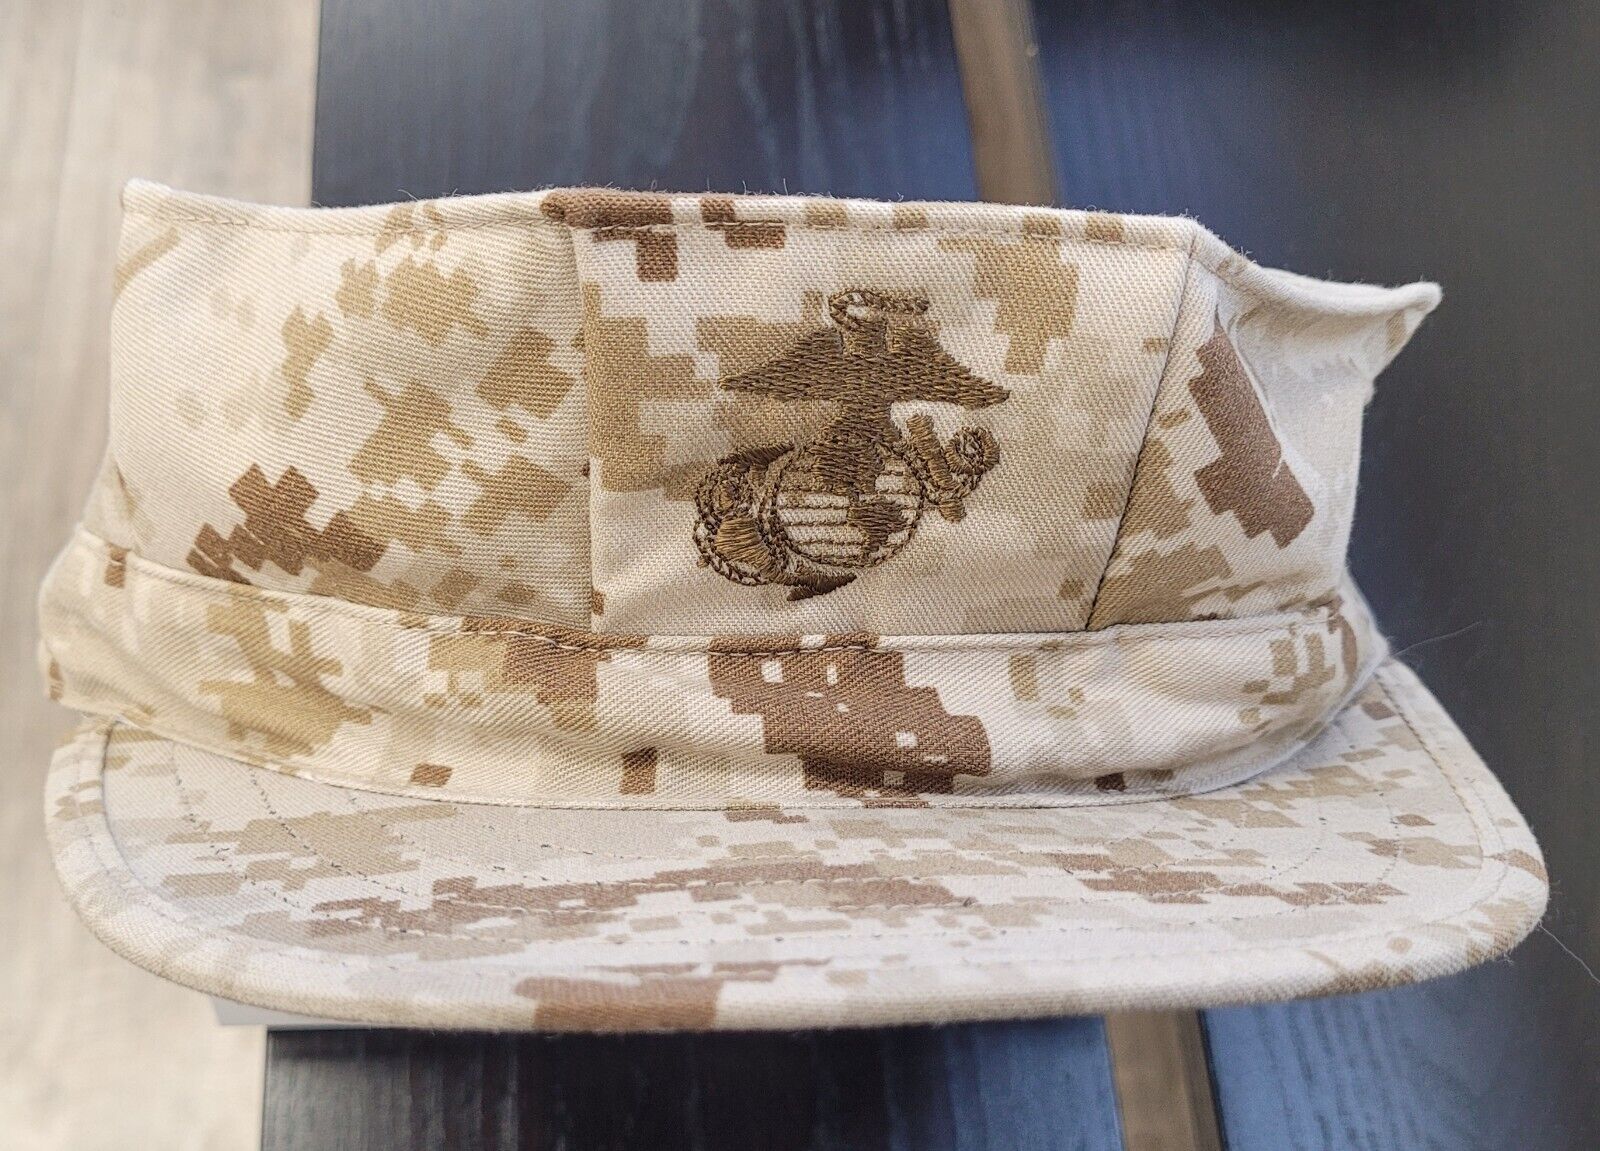  Details about USMC Marine Corps Garrison Marpat Cover Hat Cap Sz M Desert Cam